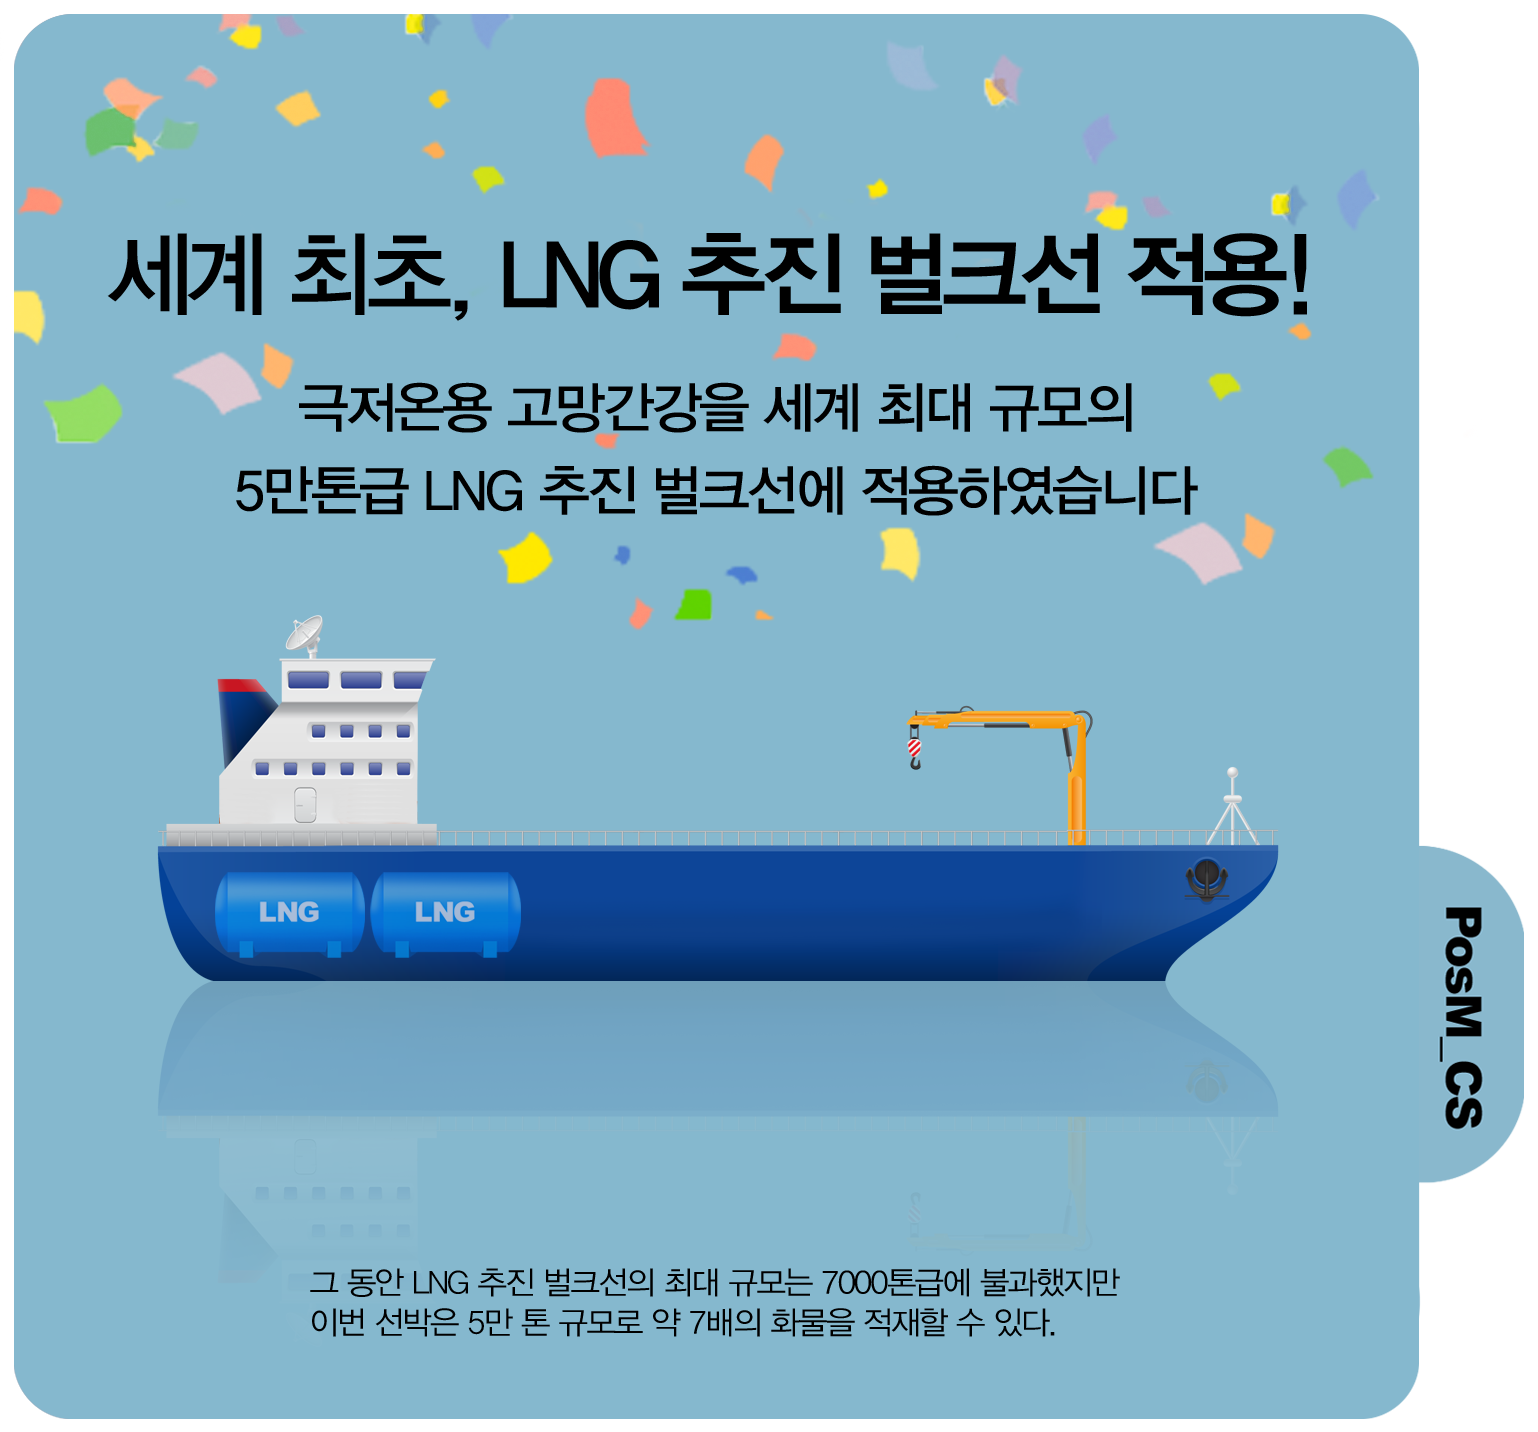 세계 최초, LNG 추진 벌크선 적용! 극저온용 고망간강을 세계 최대 규모의 5만톤급 LNG 추진 벌크선에 적용하였습니다. 그 동안 LNG 추진 벌크선의 최대 규모는 700톤급에 불과했지만 이번 선박은 5만 톤 규모로 약 7배의 확률을 적재할 수 있다. PosM_CS